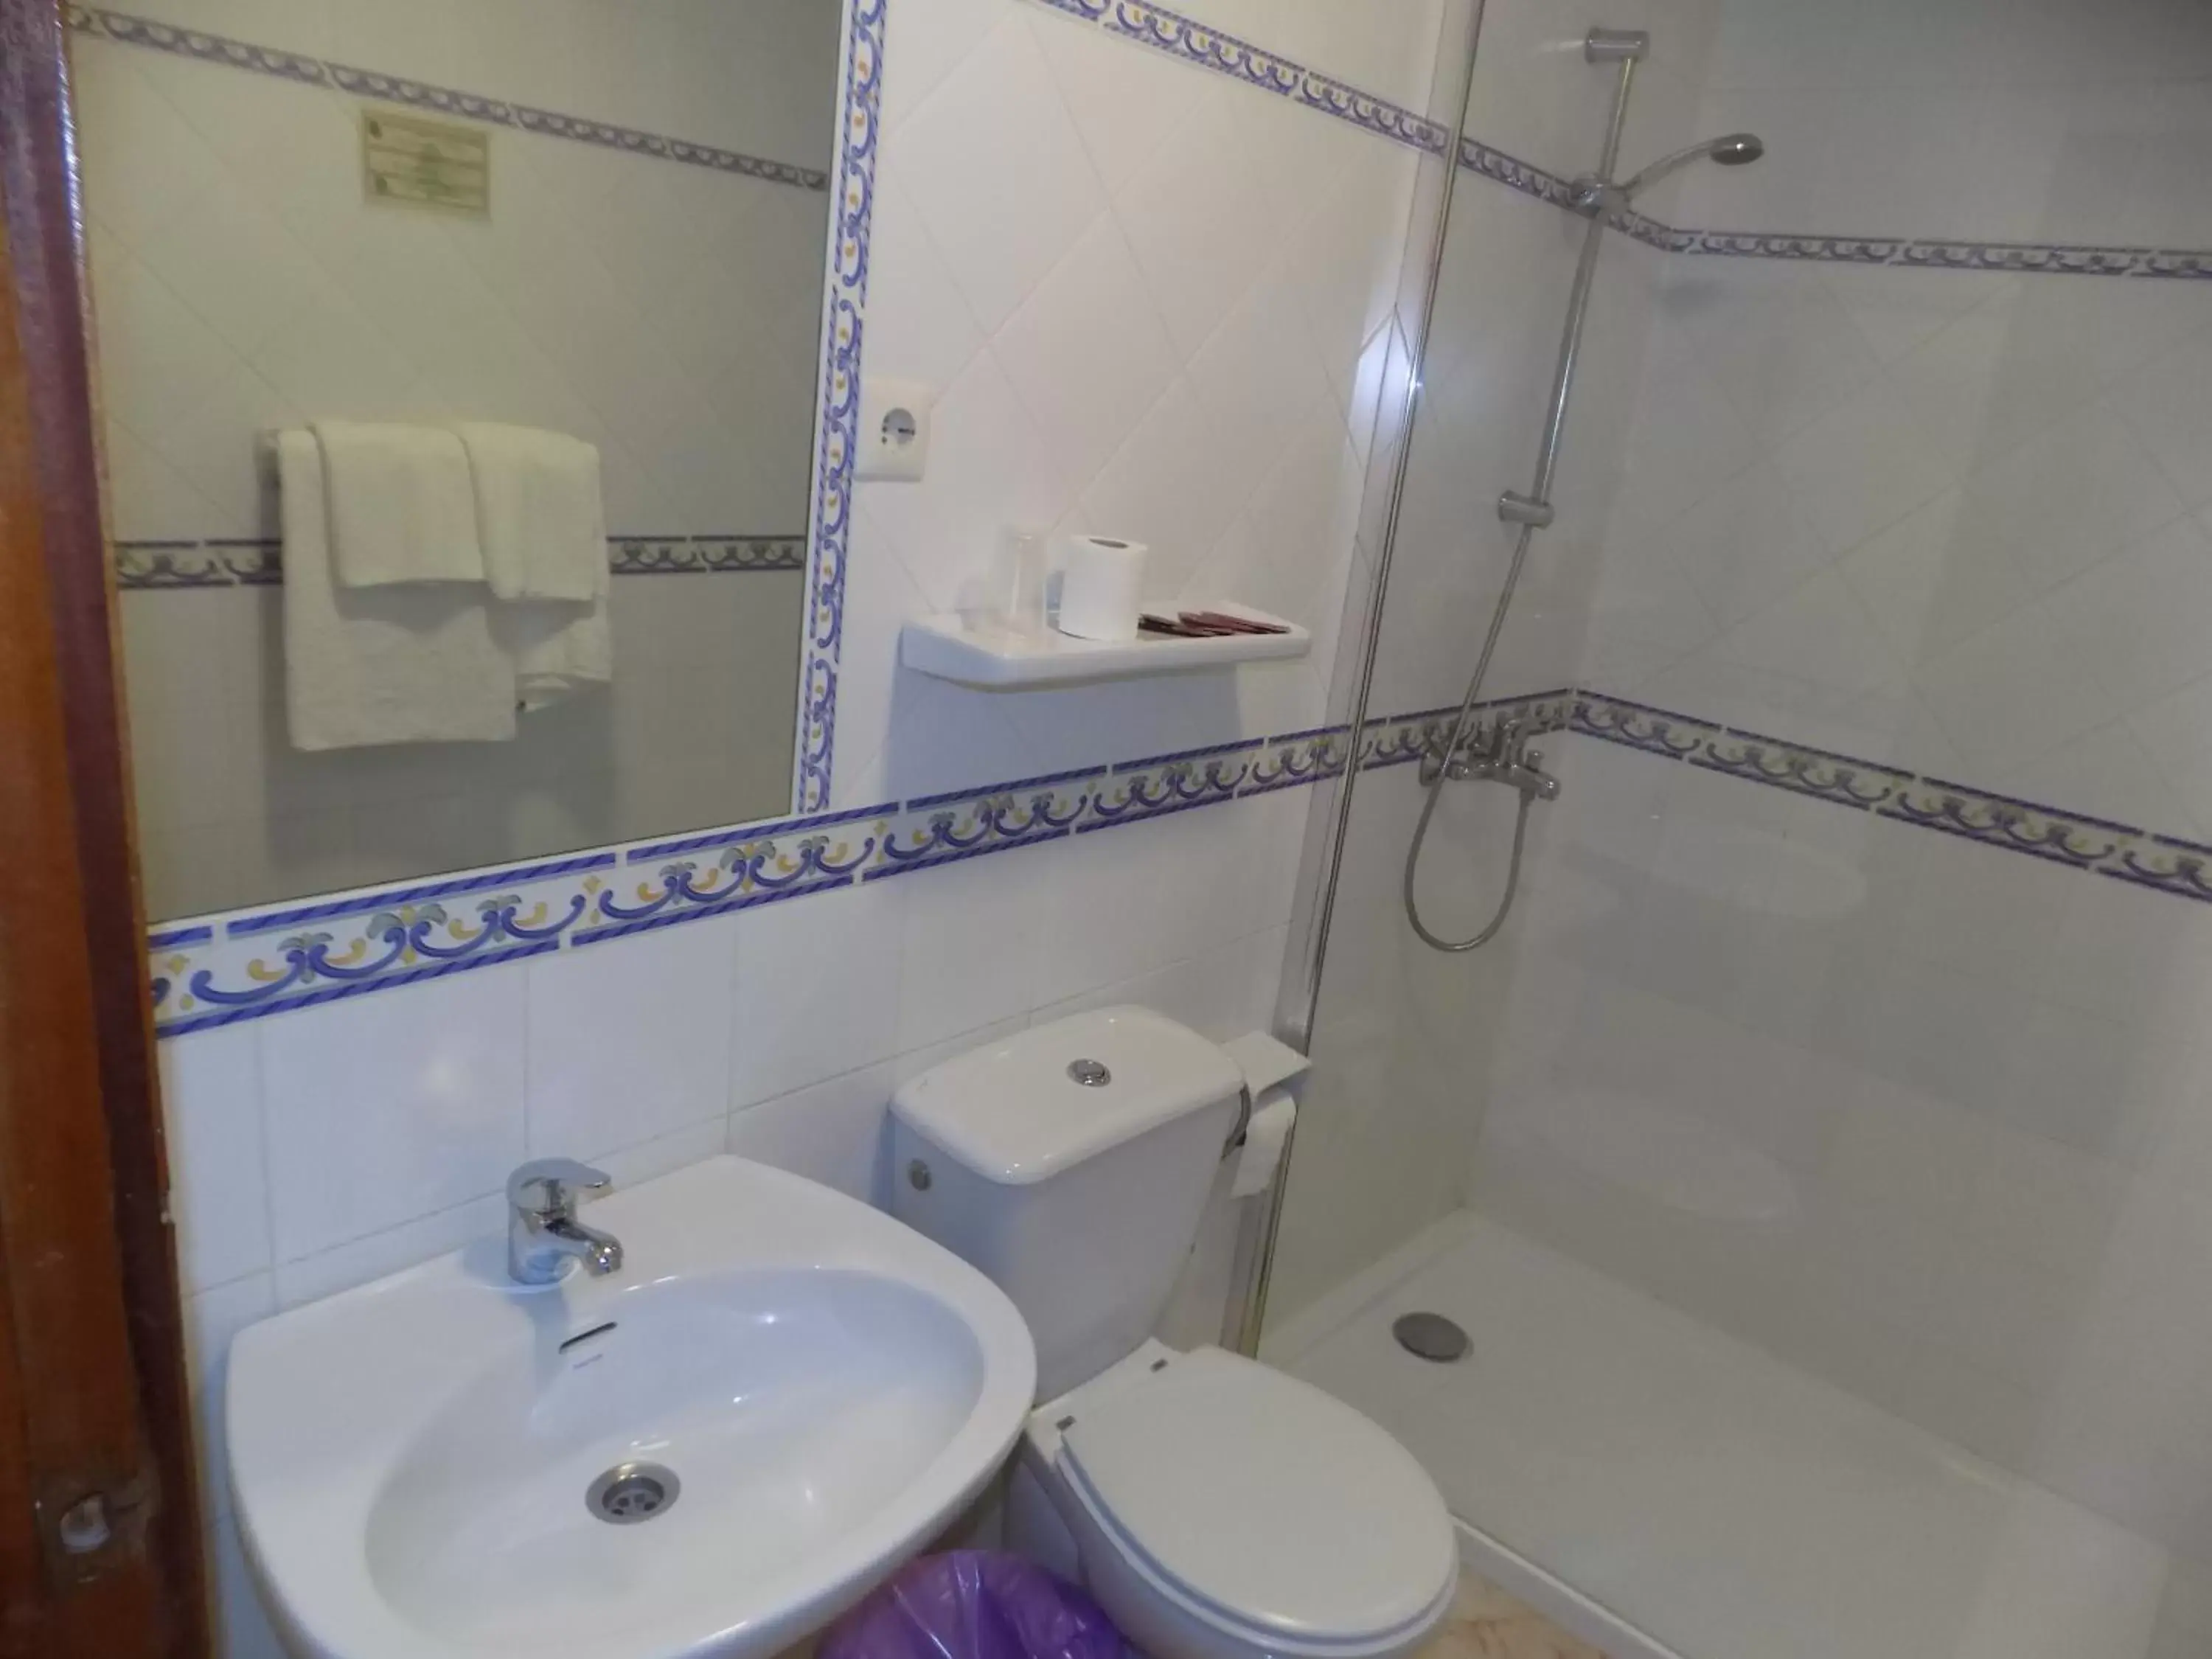 Bathroom in Hotel La Barca